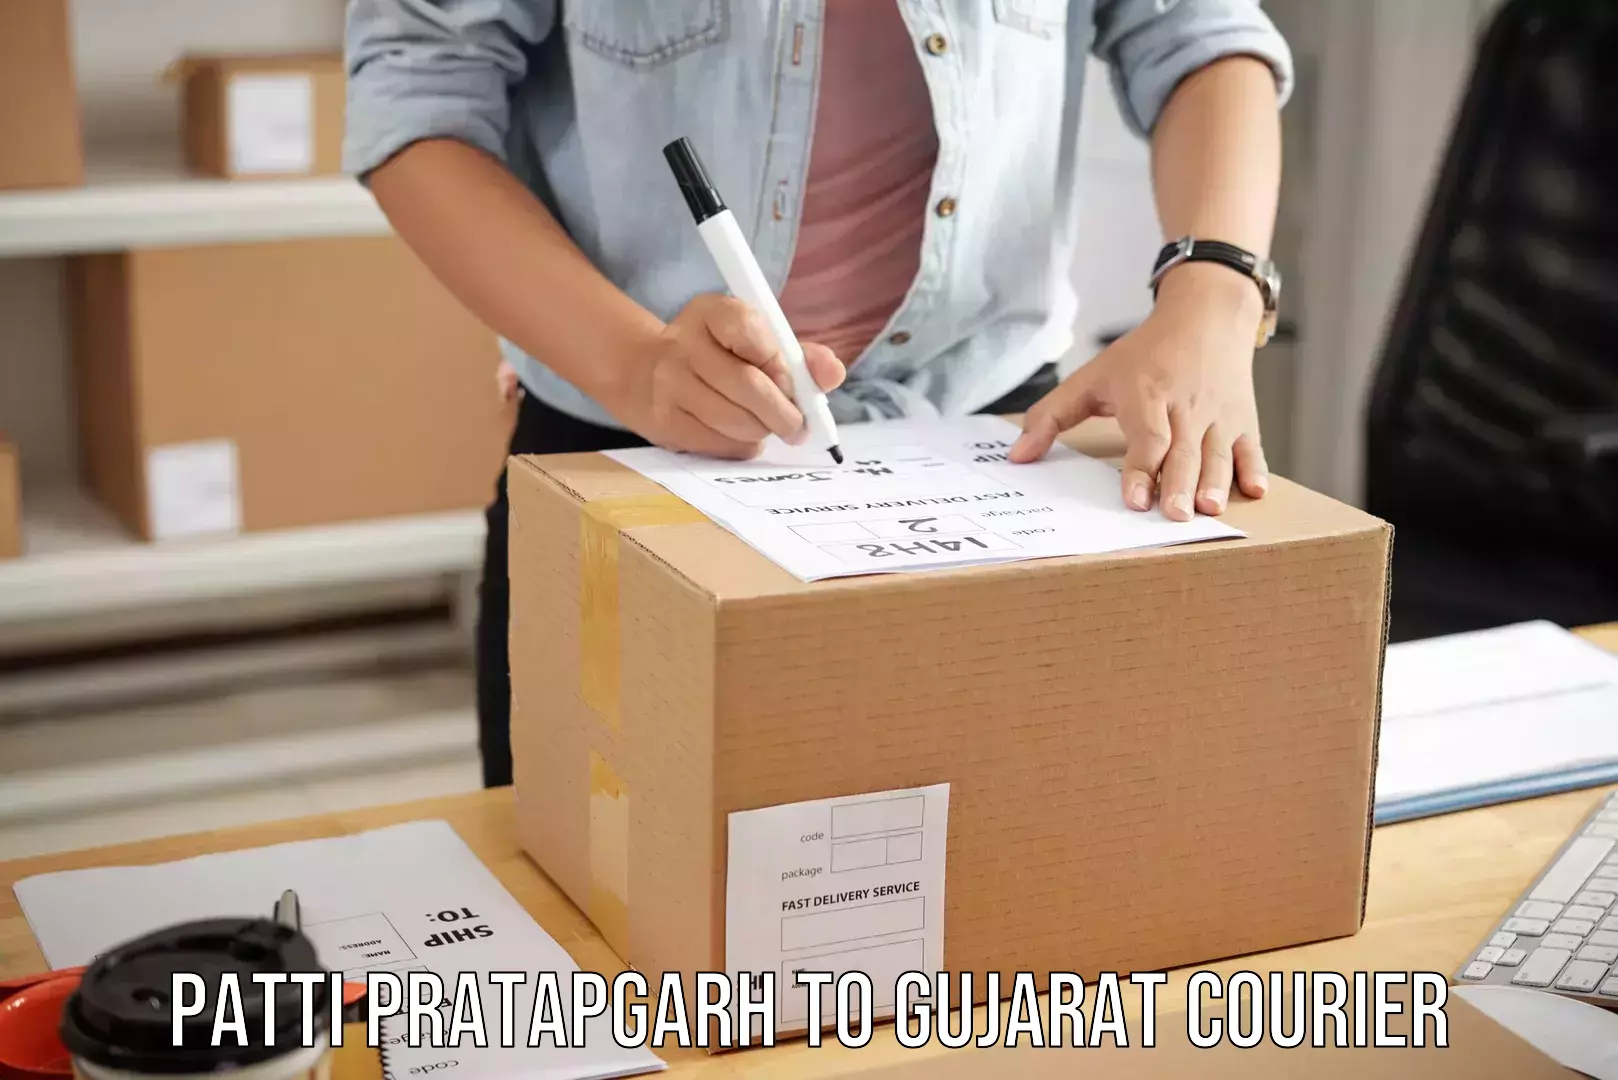 Reliable luggage courier Patti Pratapgarh to Patdi